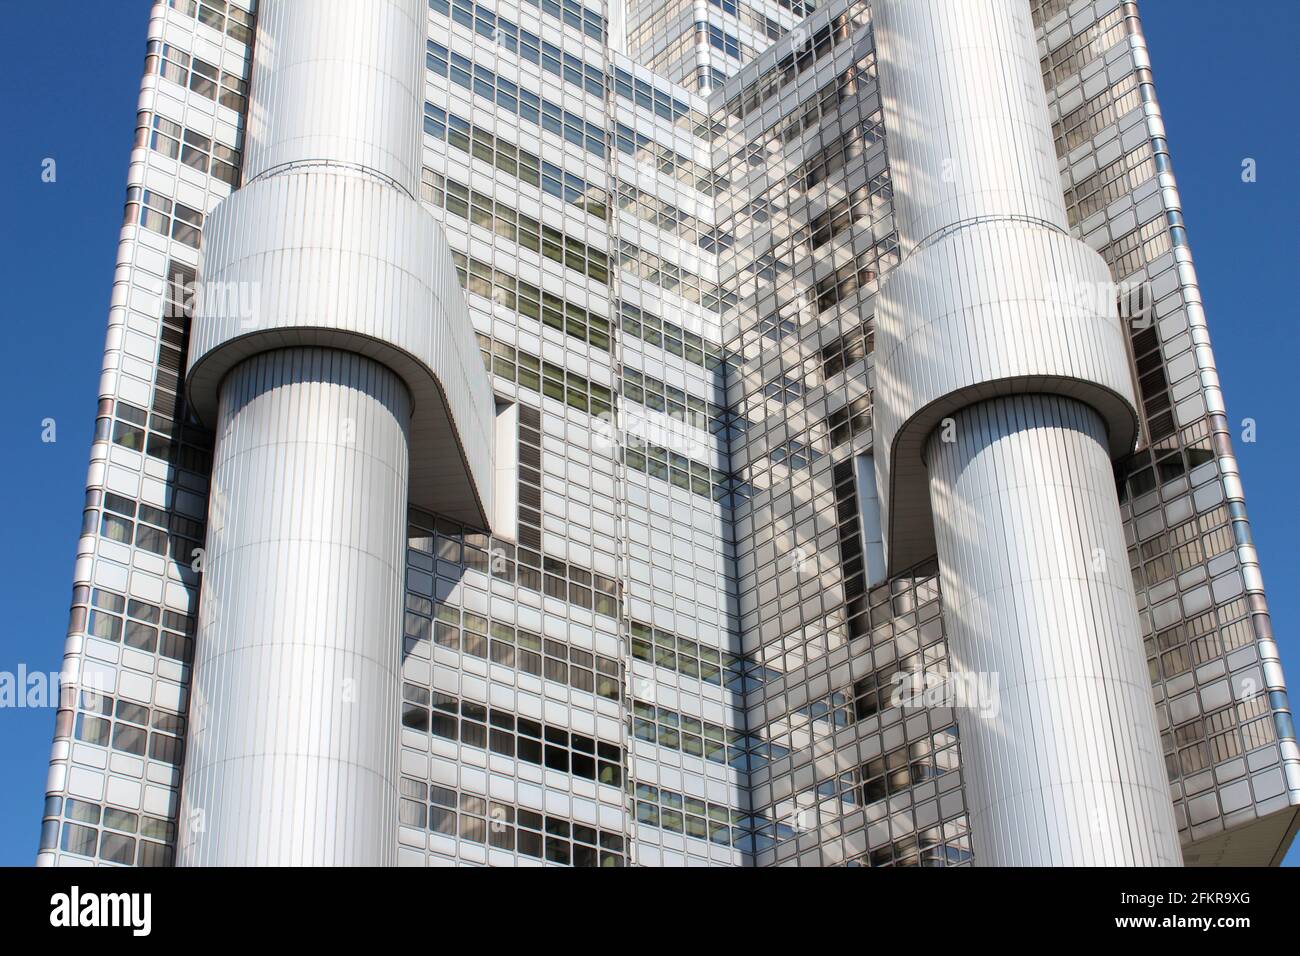 Moderner Metall- und Glasturm mit freiliegendem Zirkulationskern in München, Deutschland, Hypo-Haus, HVB Tower Stockfoto